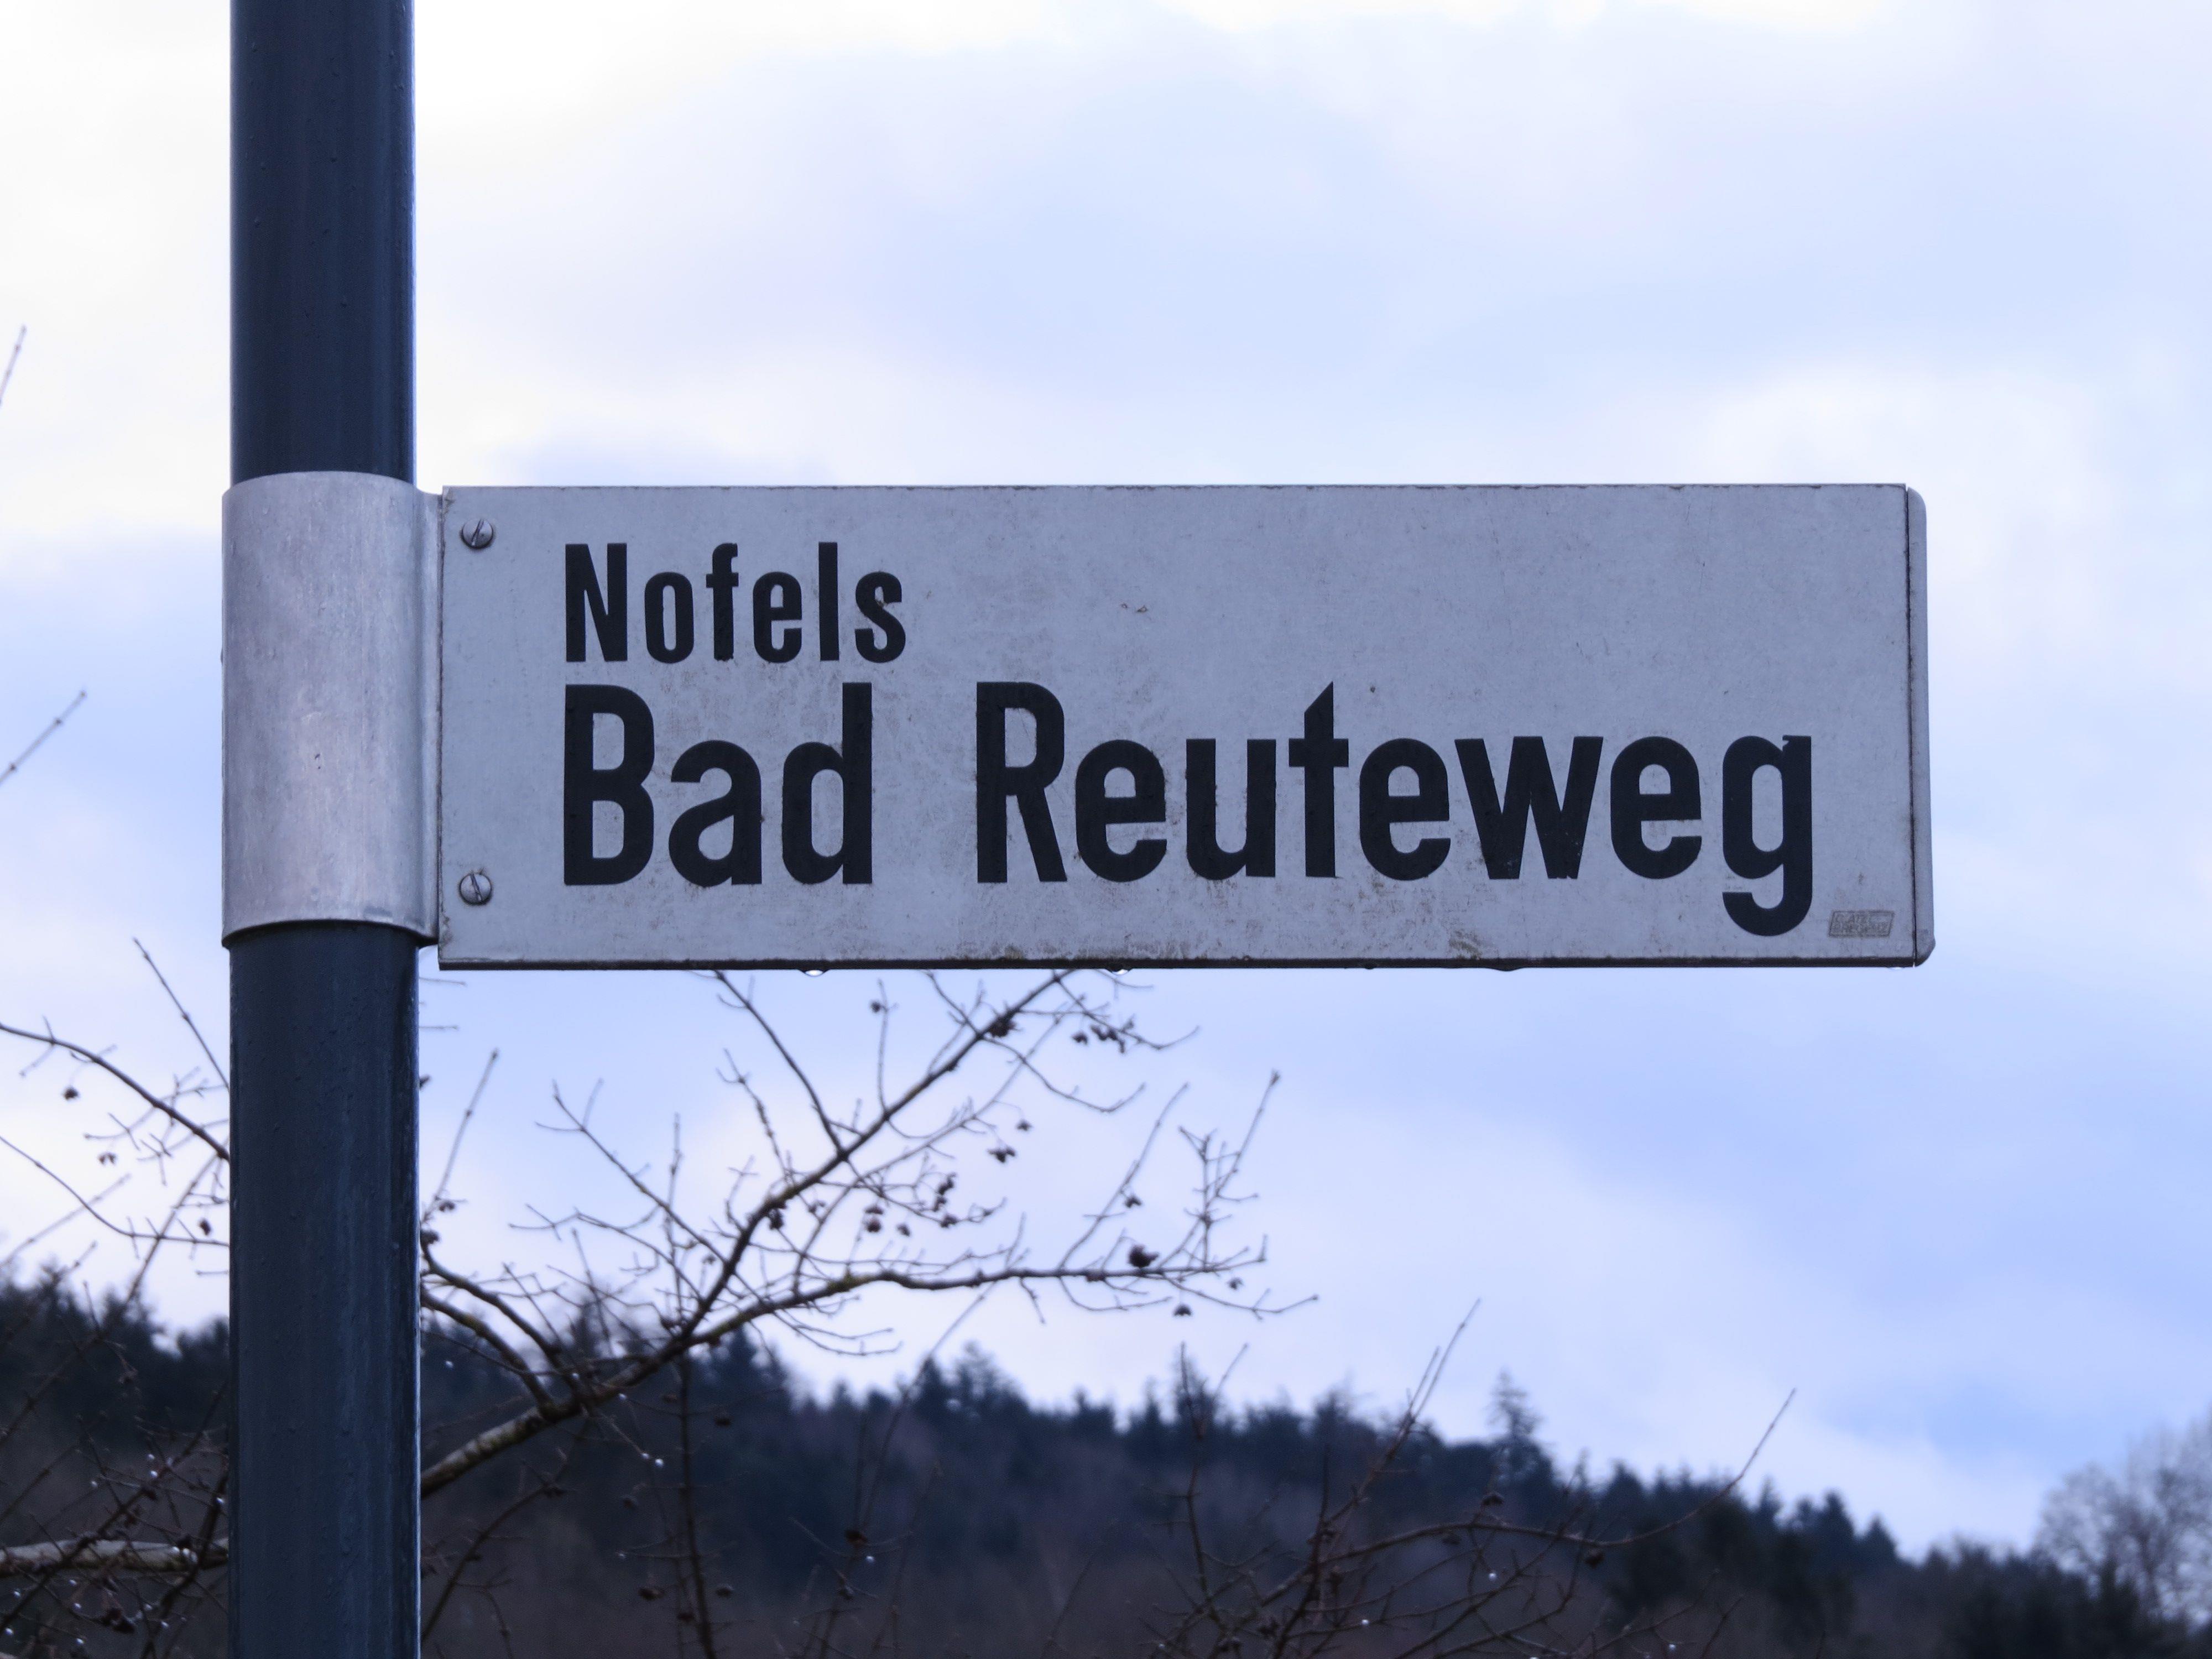 Bad-Reute-Weg: Der Doppelname leitet zur Annahme, dass dort gerodet wurde, um einen Weg zum geschichtsträchtigen Bädle zu ebnen.